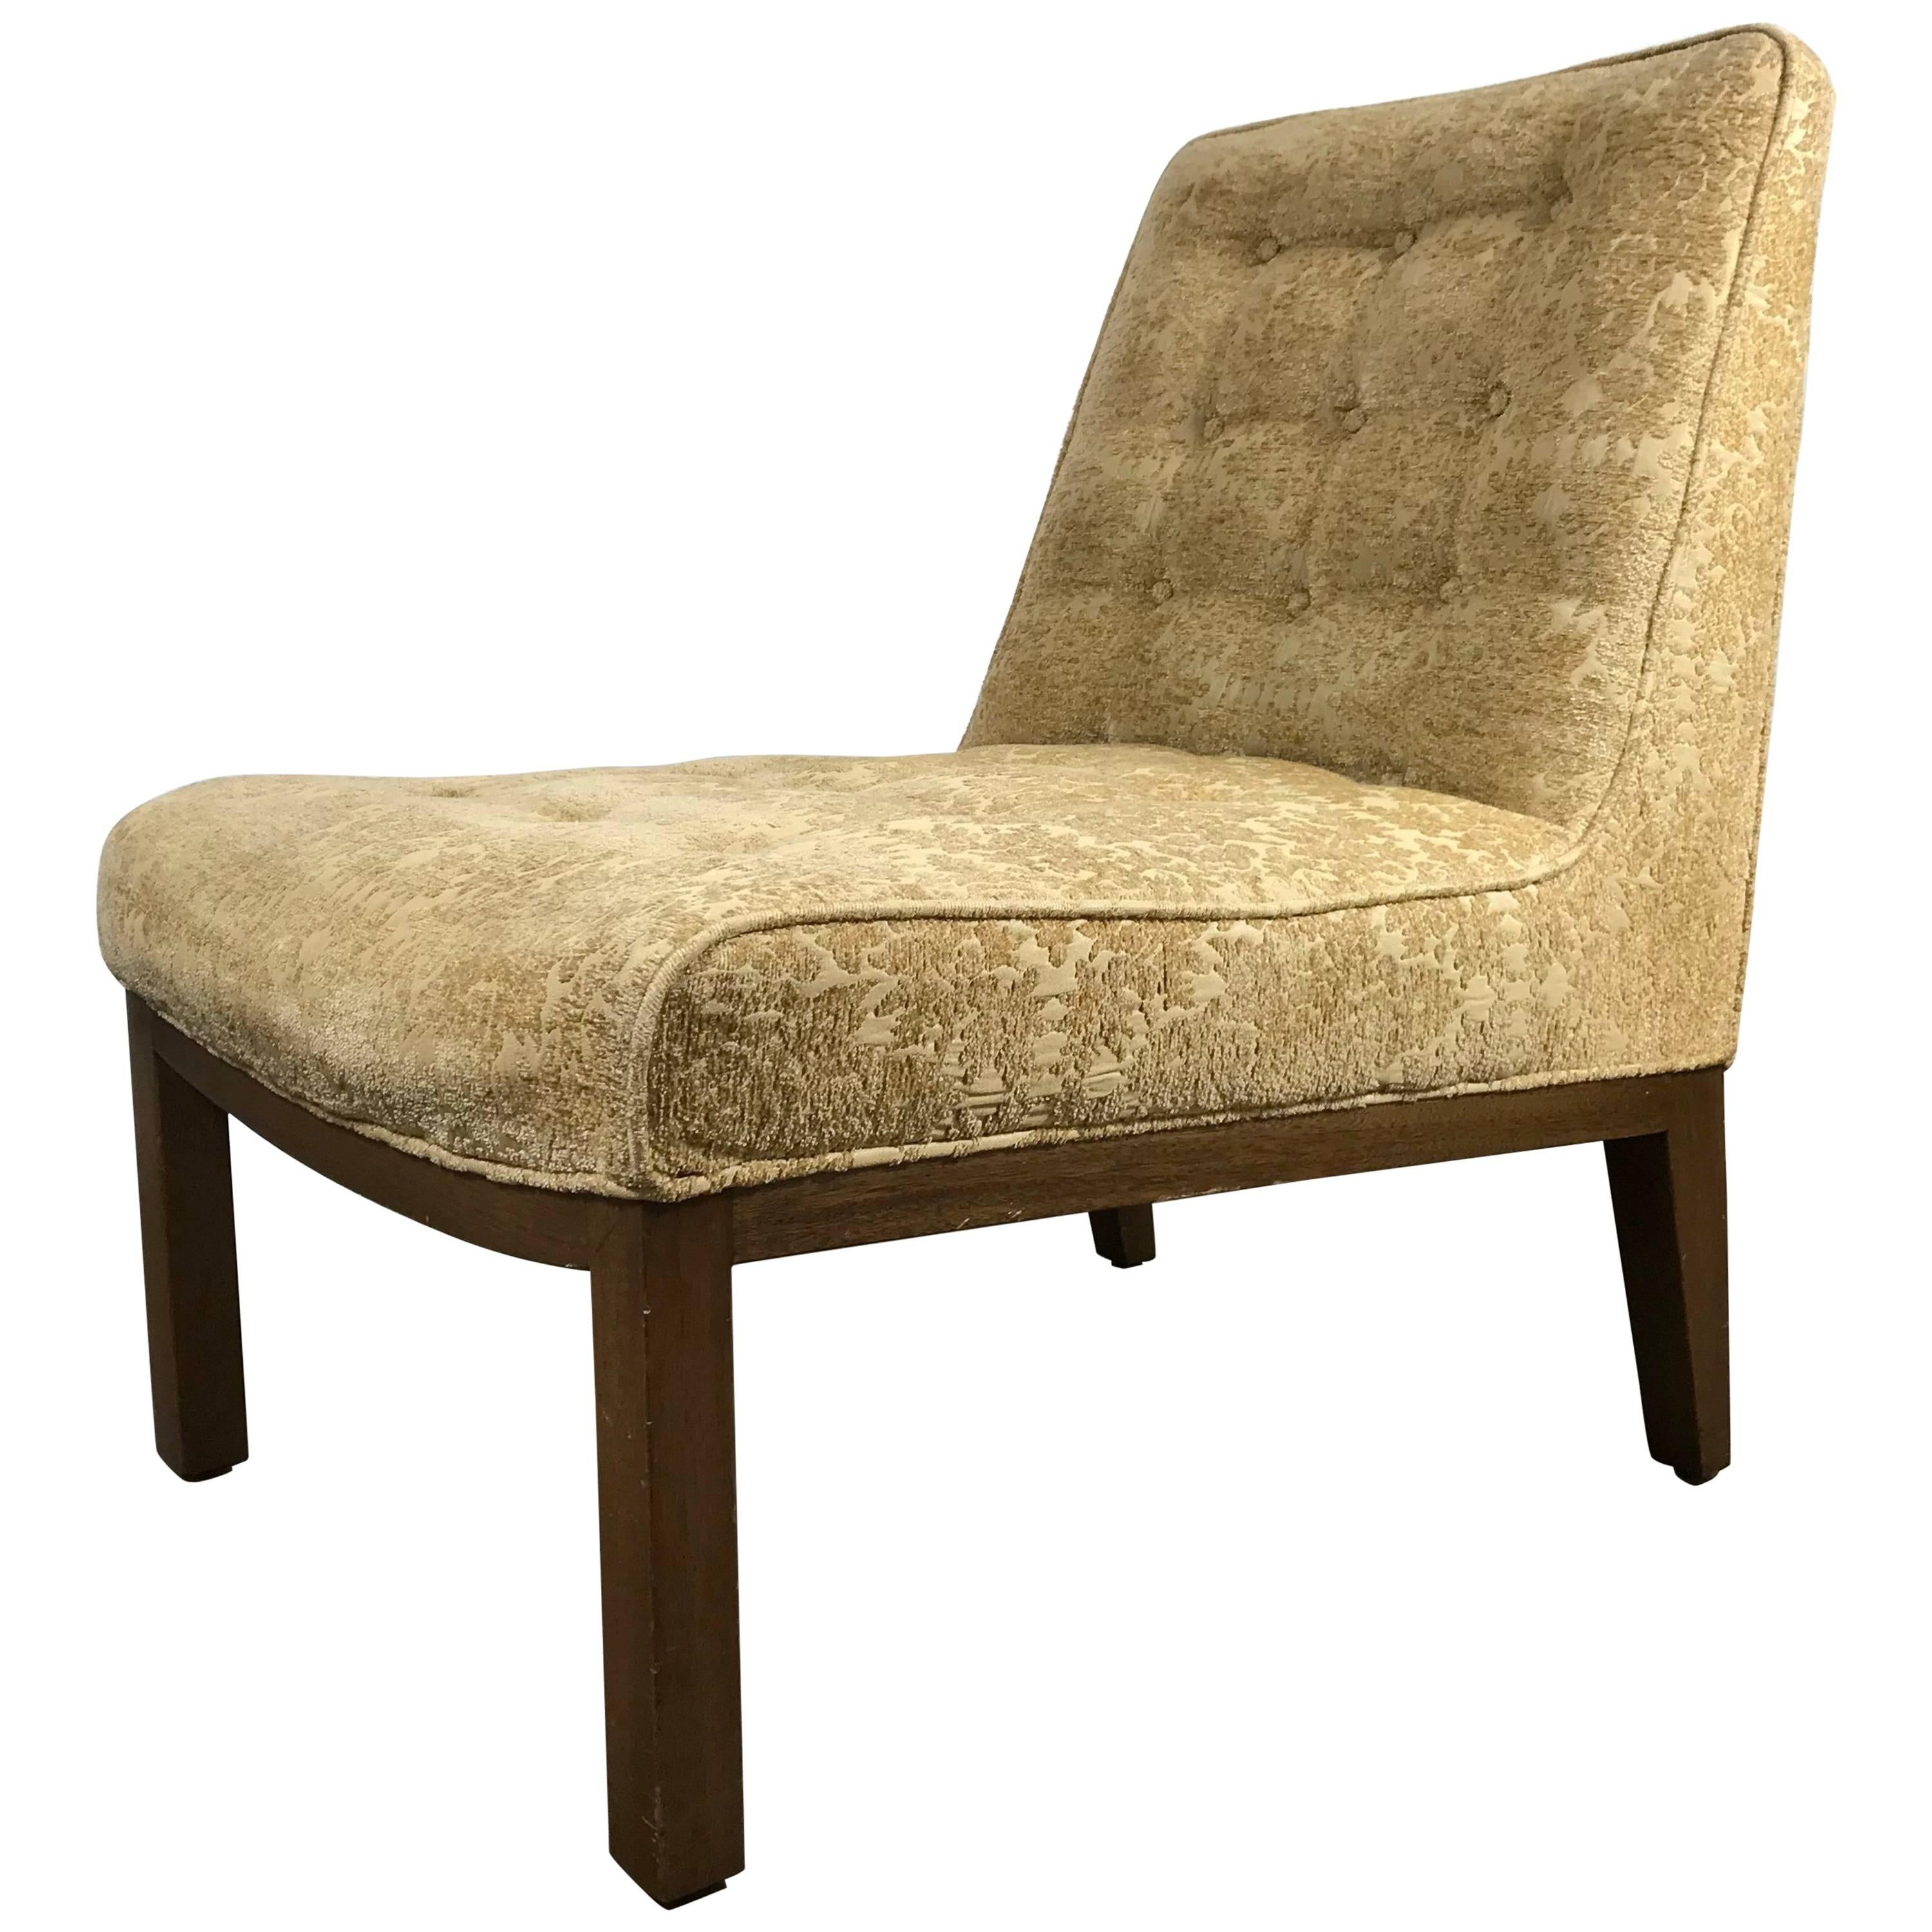 Classic Modern Slipper Chair Designed by Edward Wormley for Dunbar